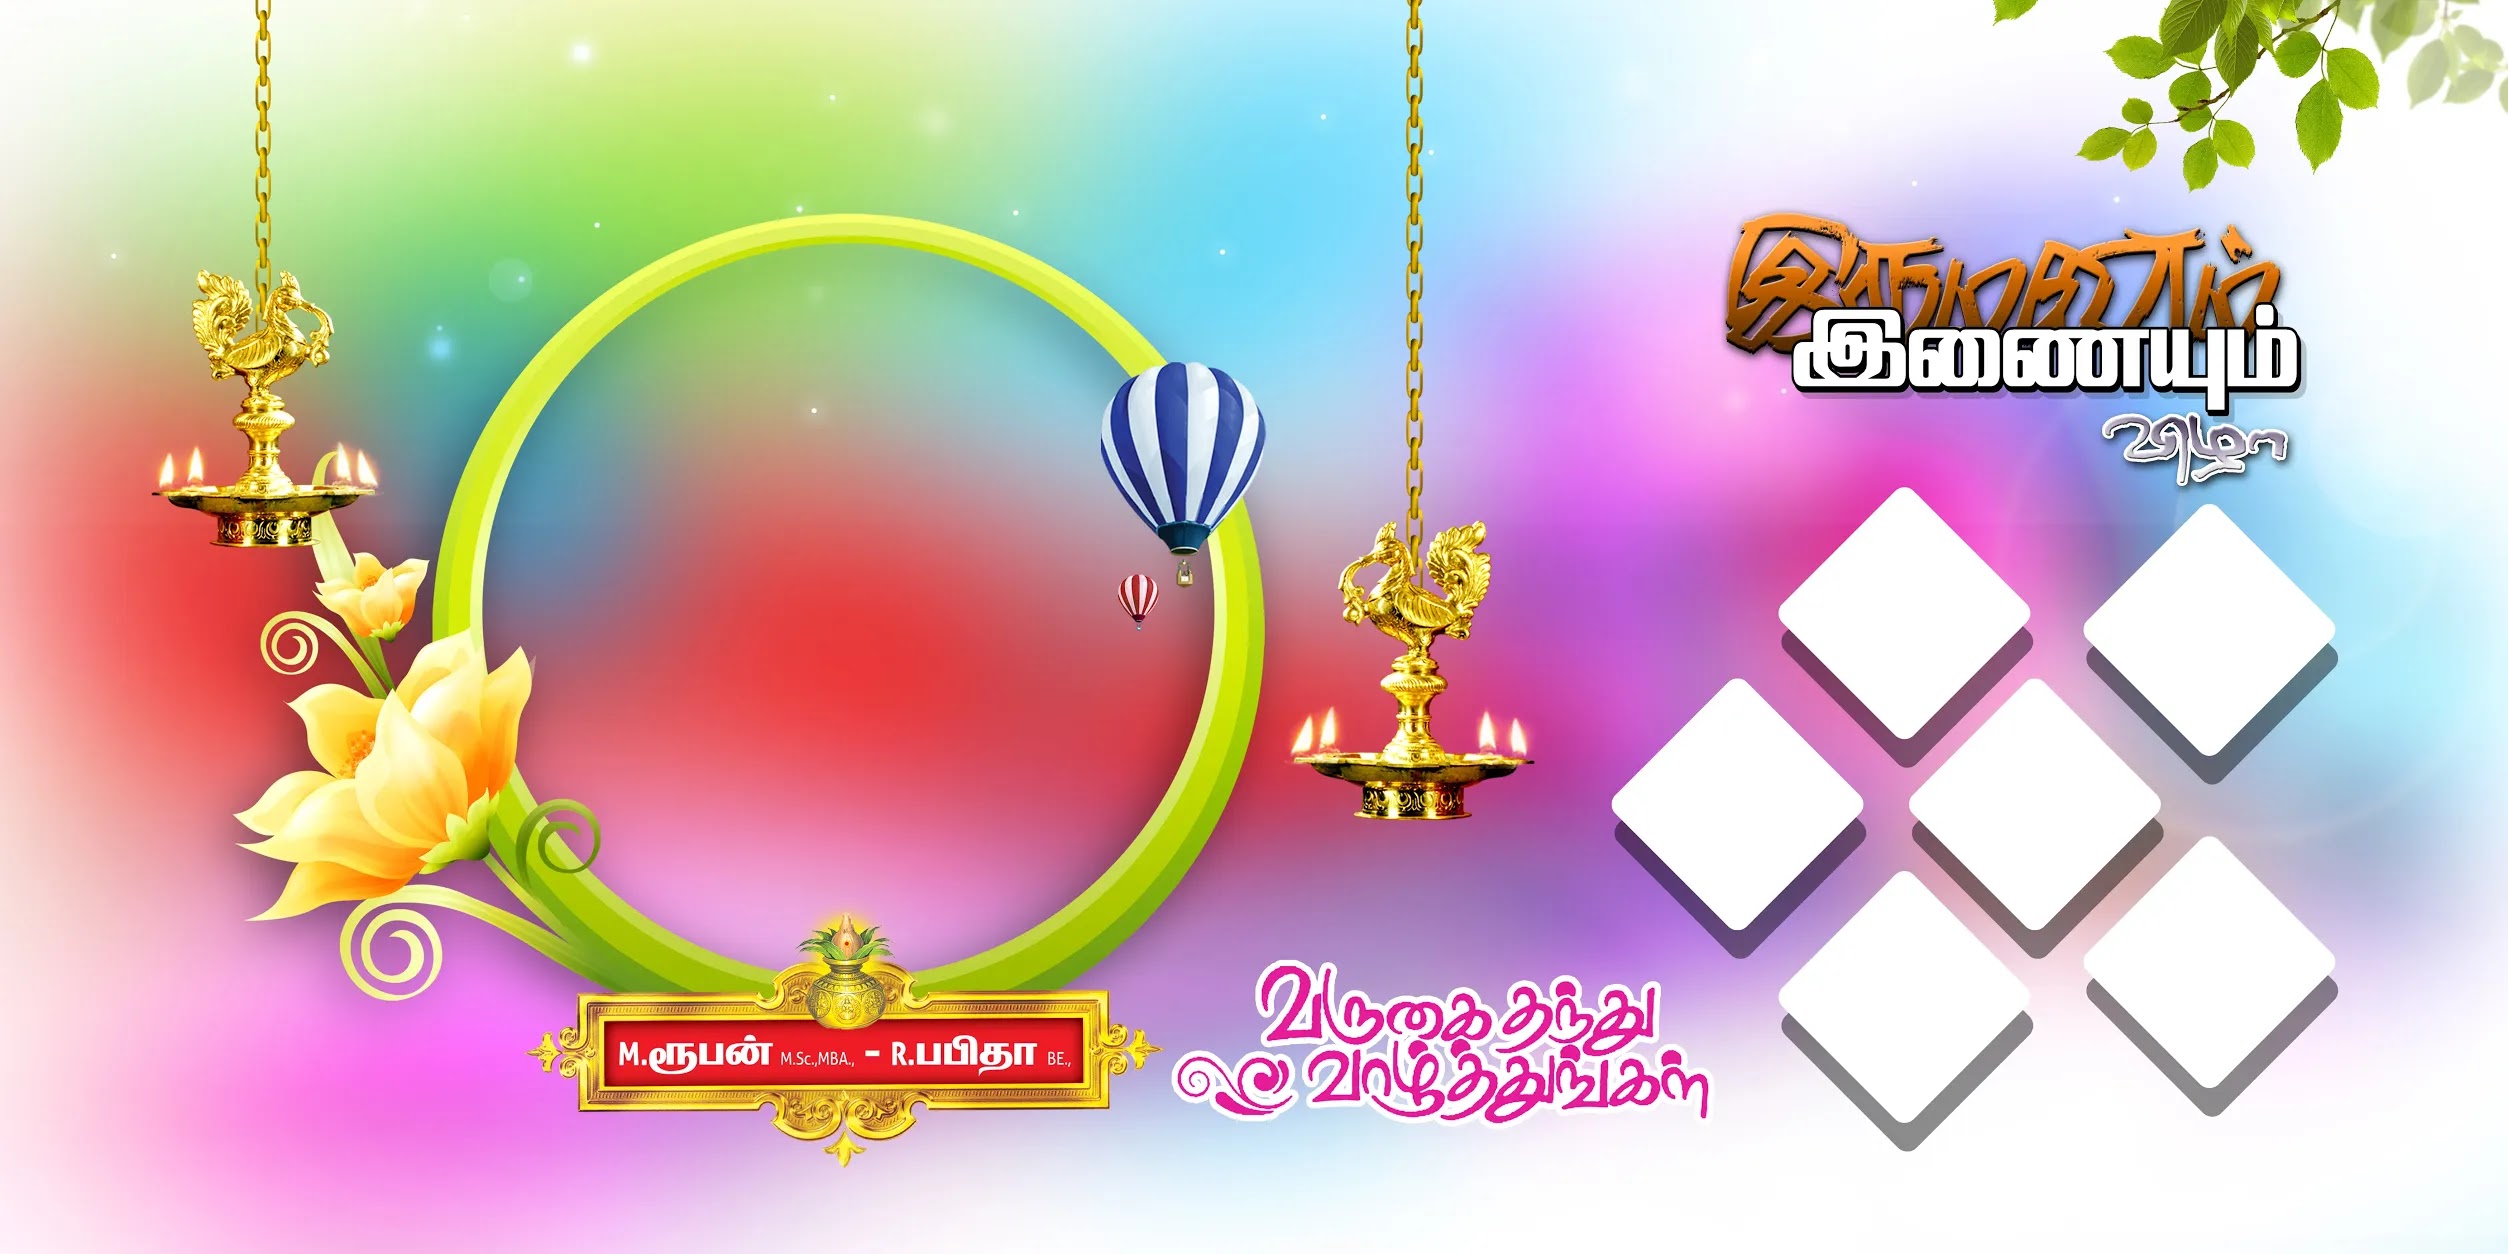 Wedding Banner Design Psd Templates Free Download - Kumaran Network